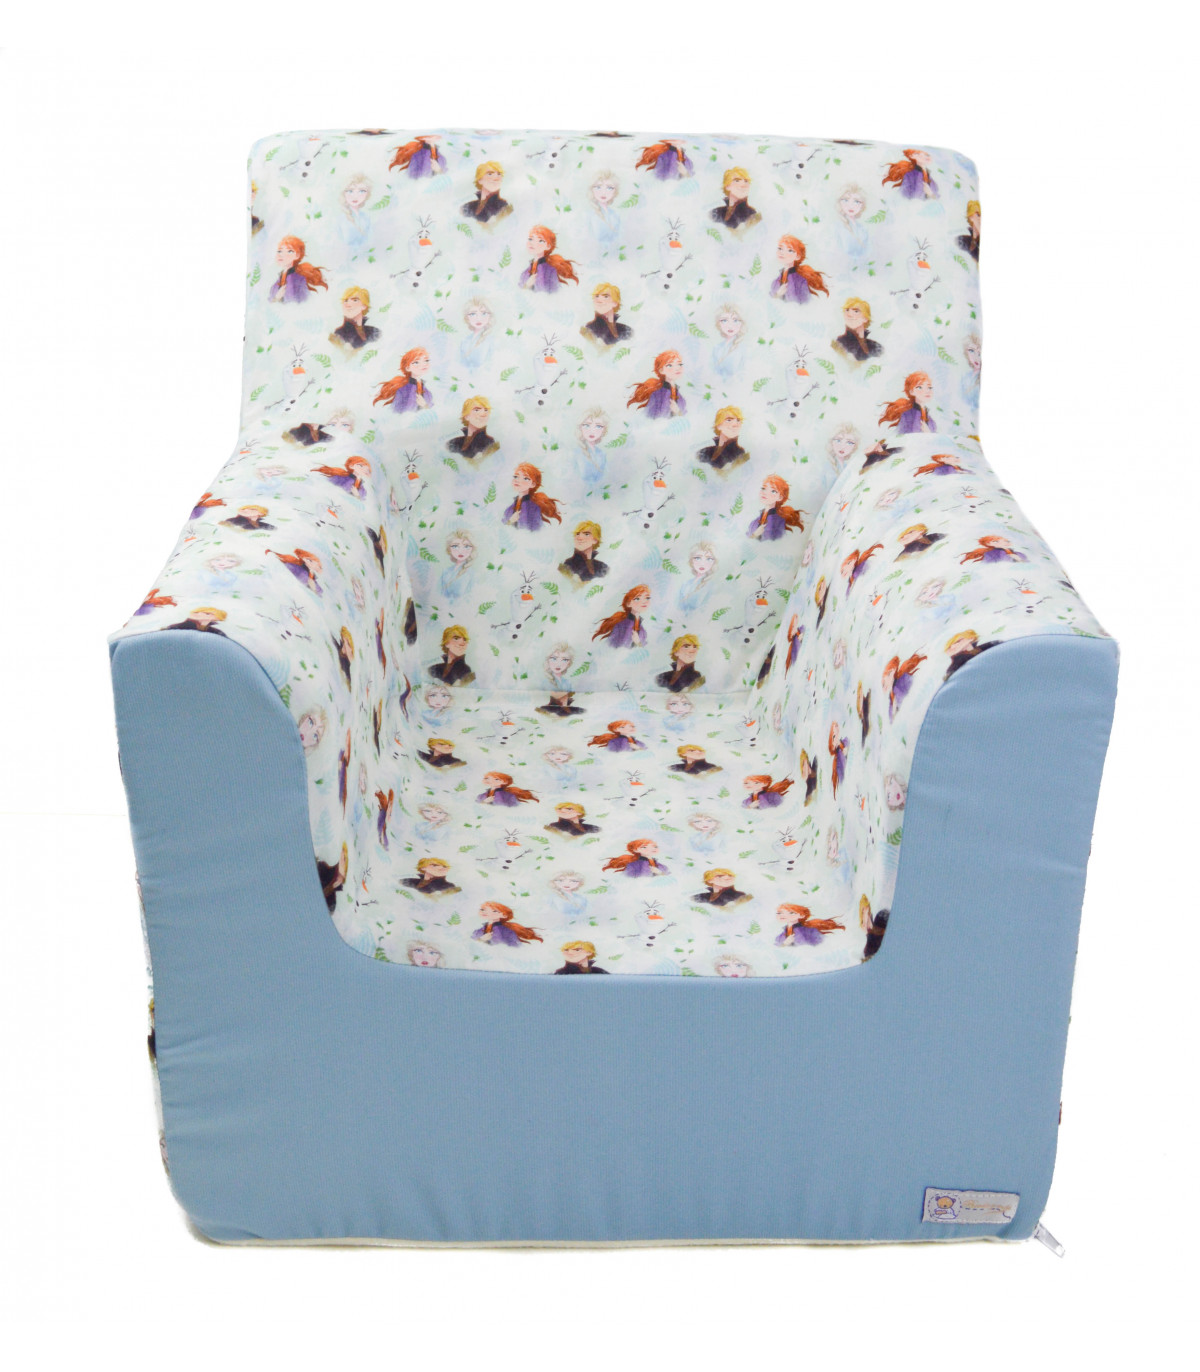 ⭐ Sillon o asiento infantil espuma para bebes y niños "Frozen" ⭐| Nenel